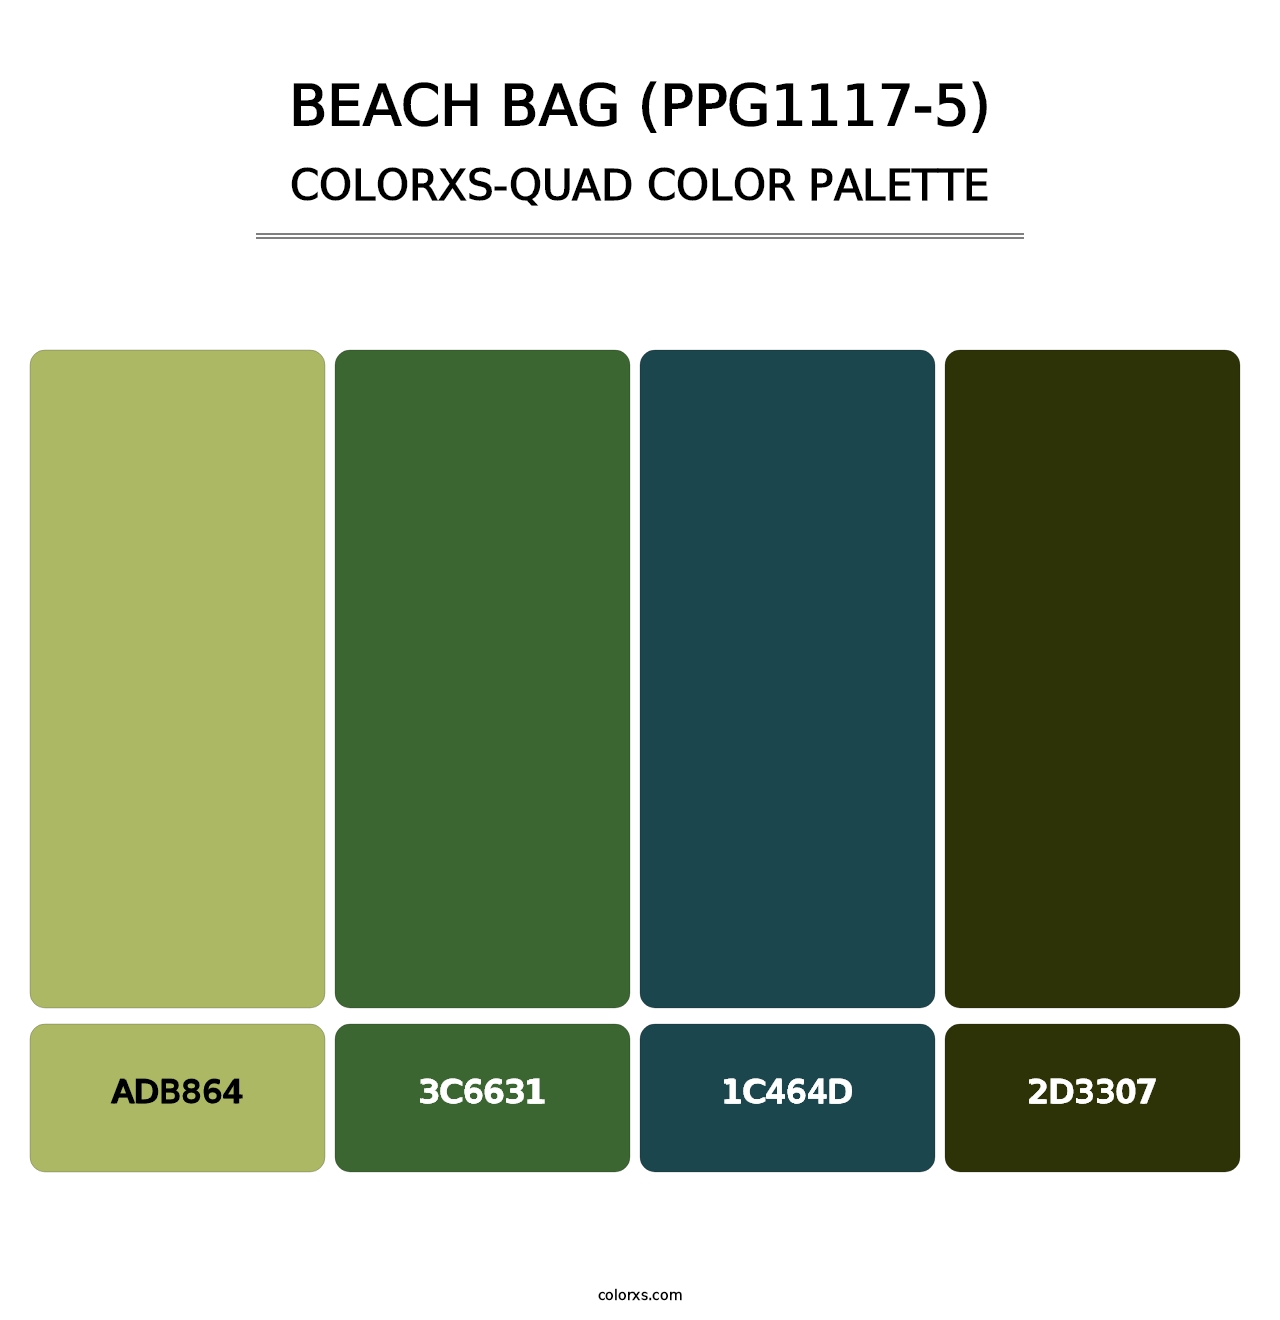 Beach Bag (PPG1117-5) - Colorxs Quad Palette